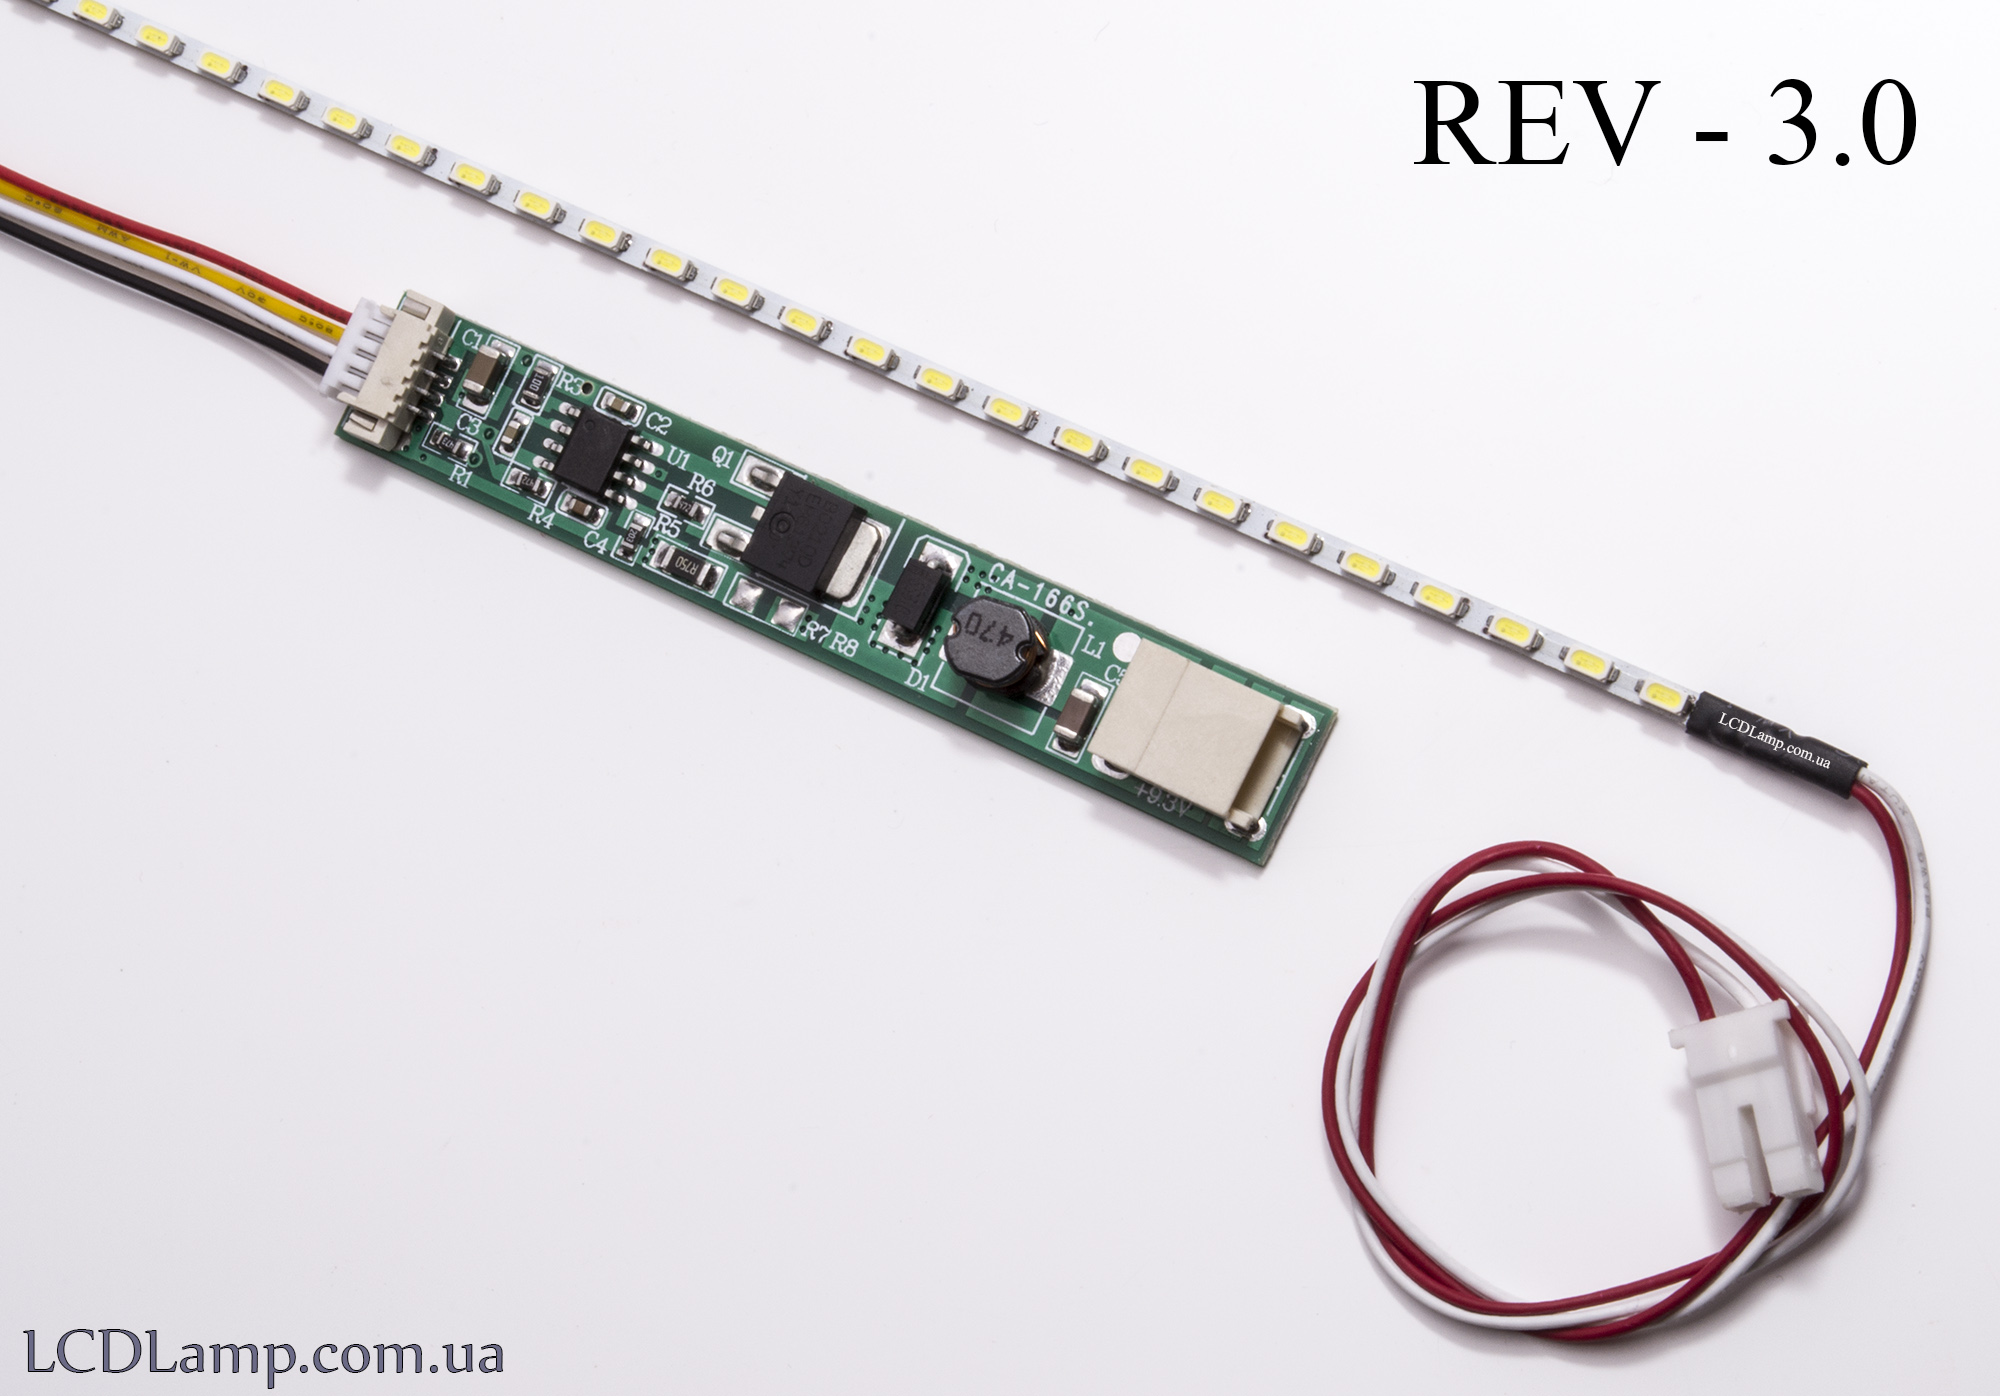 LED набор для ноутбука Rev-3.0(95мм.)